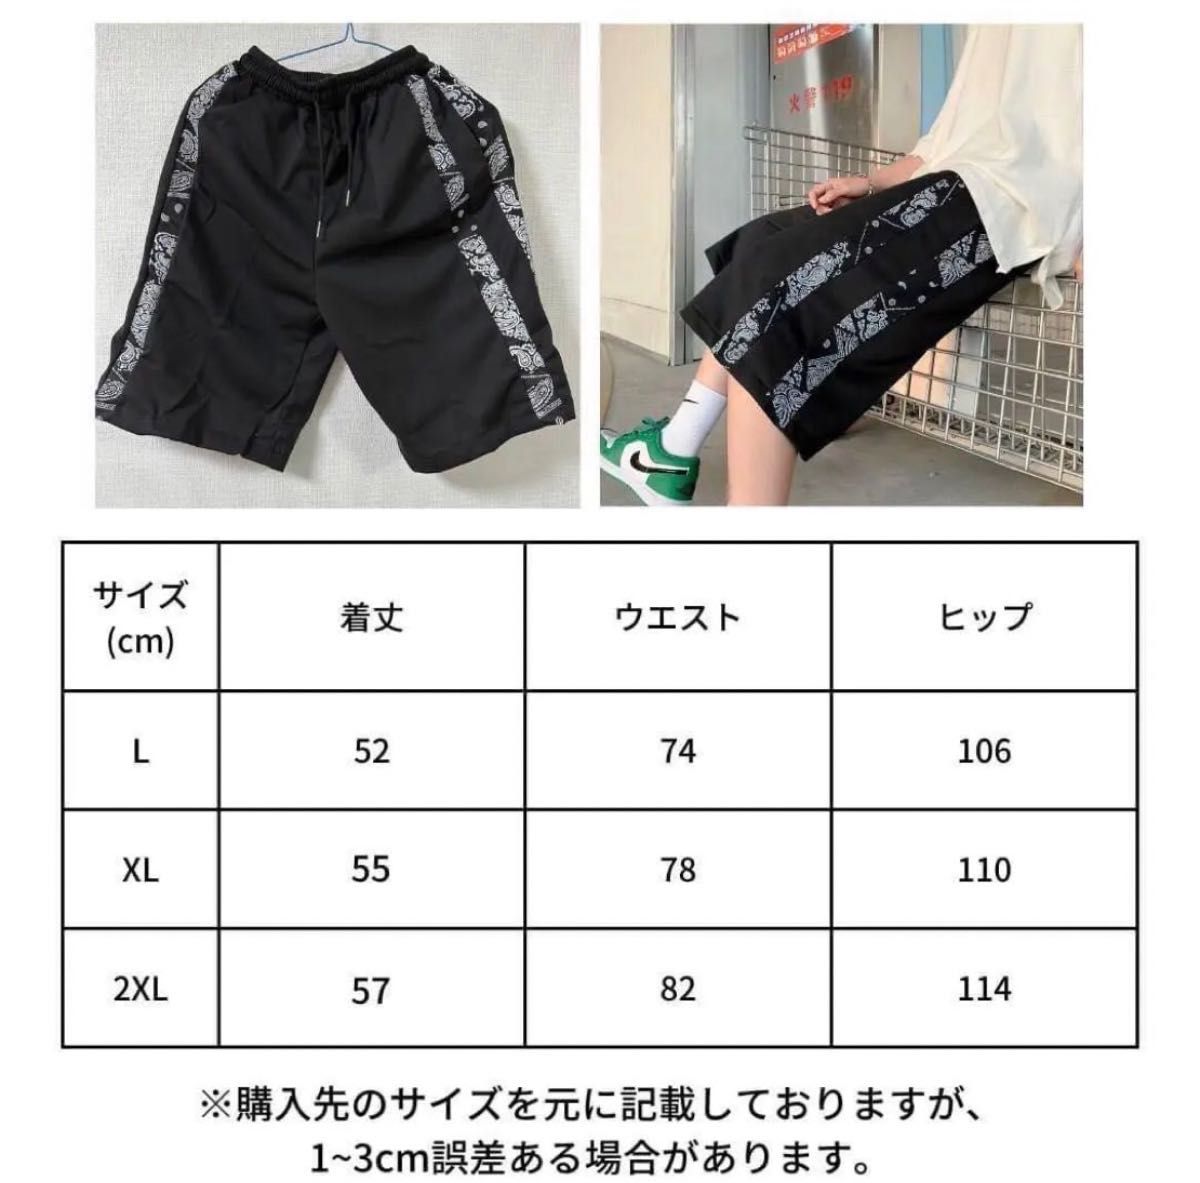 ペイズリー柄 ハーフパンツ ブラック スボン ショートパンツ メンズ 【2XL】